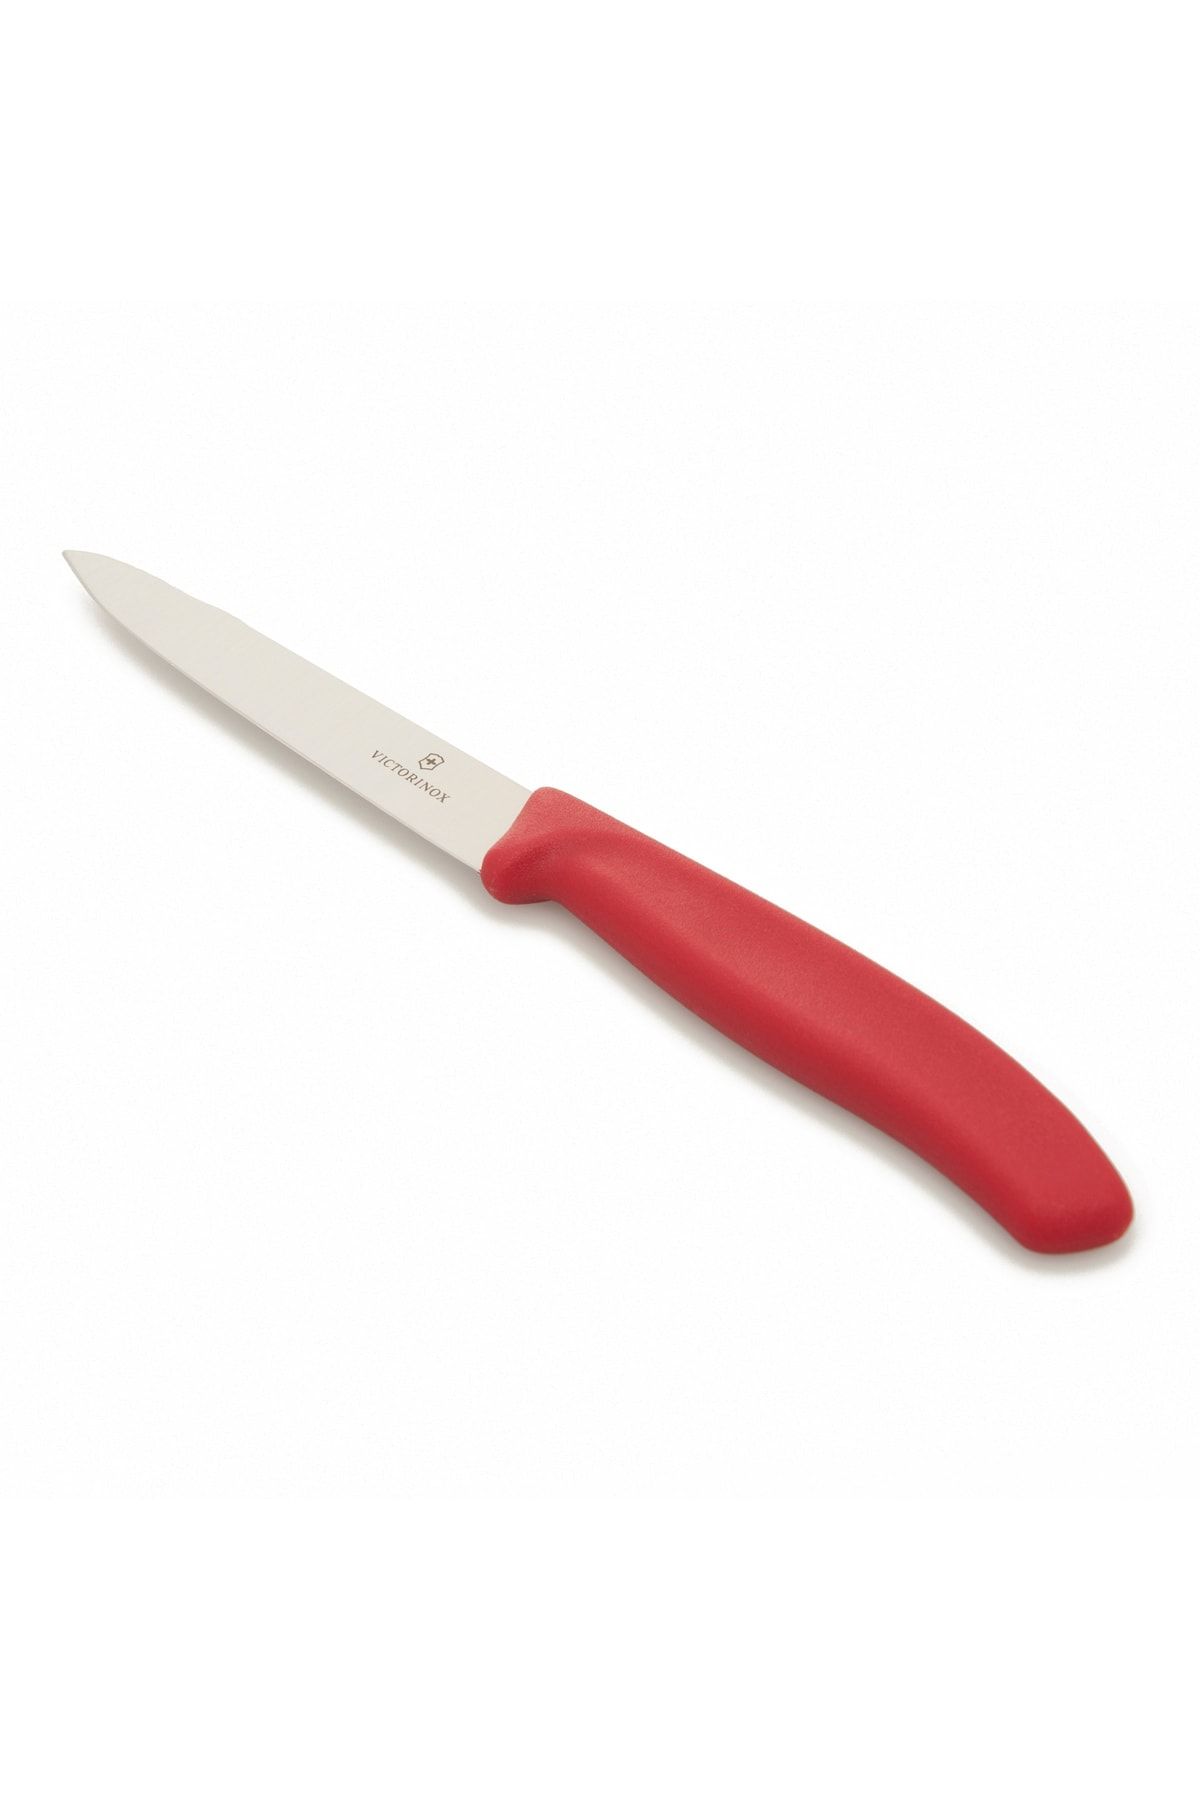 VICTORINOX 67701 Soyma Bıçağı - Kırmızı - 10 Cm